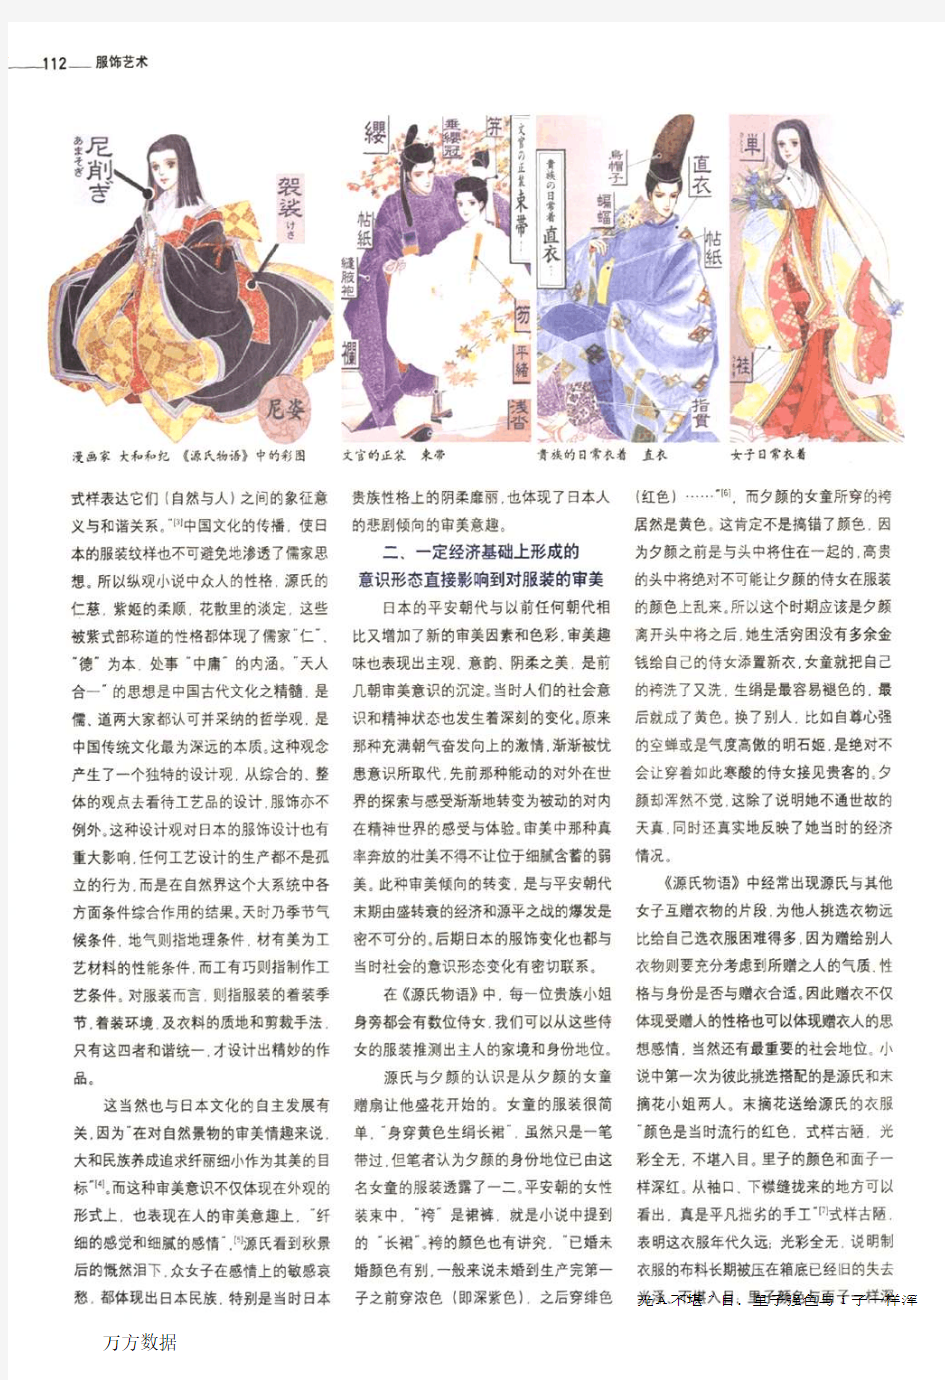 日本古代服饰审美思想的成因——以《源氏物语》中服装描写为例分析平安时代日本人的审美思想